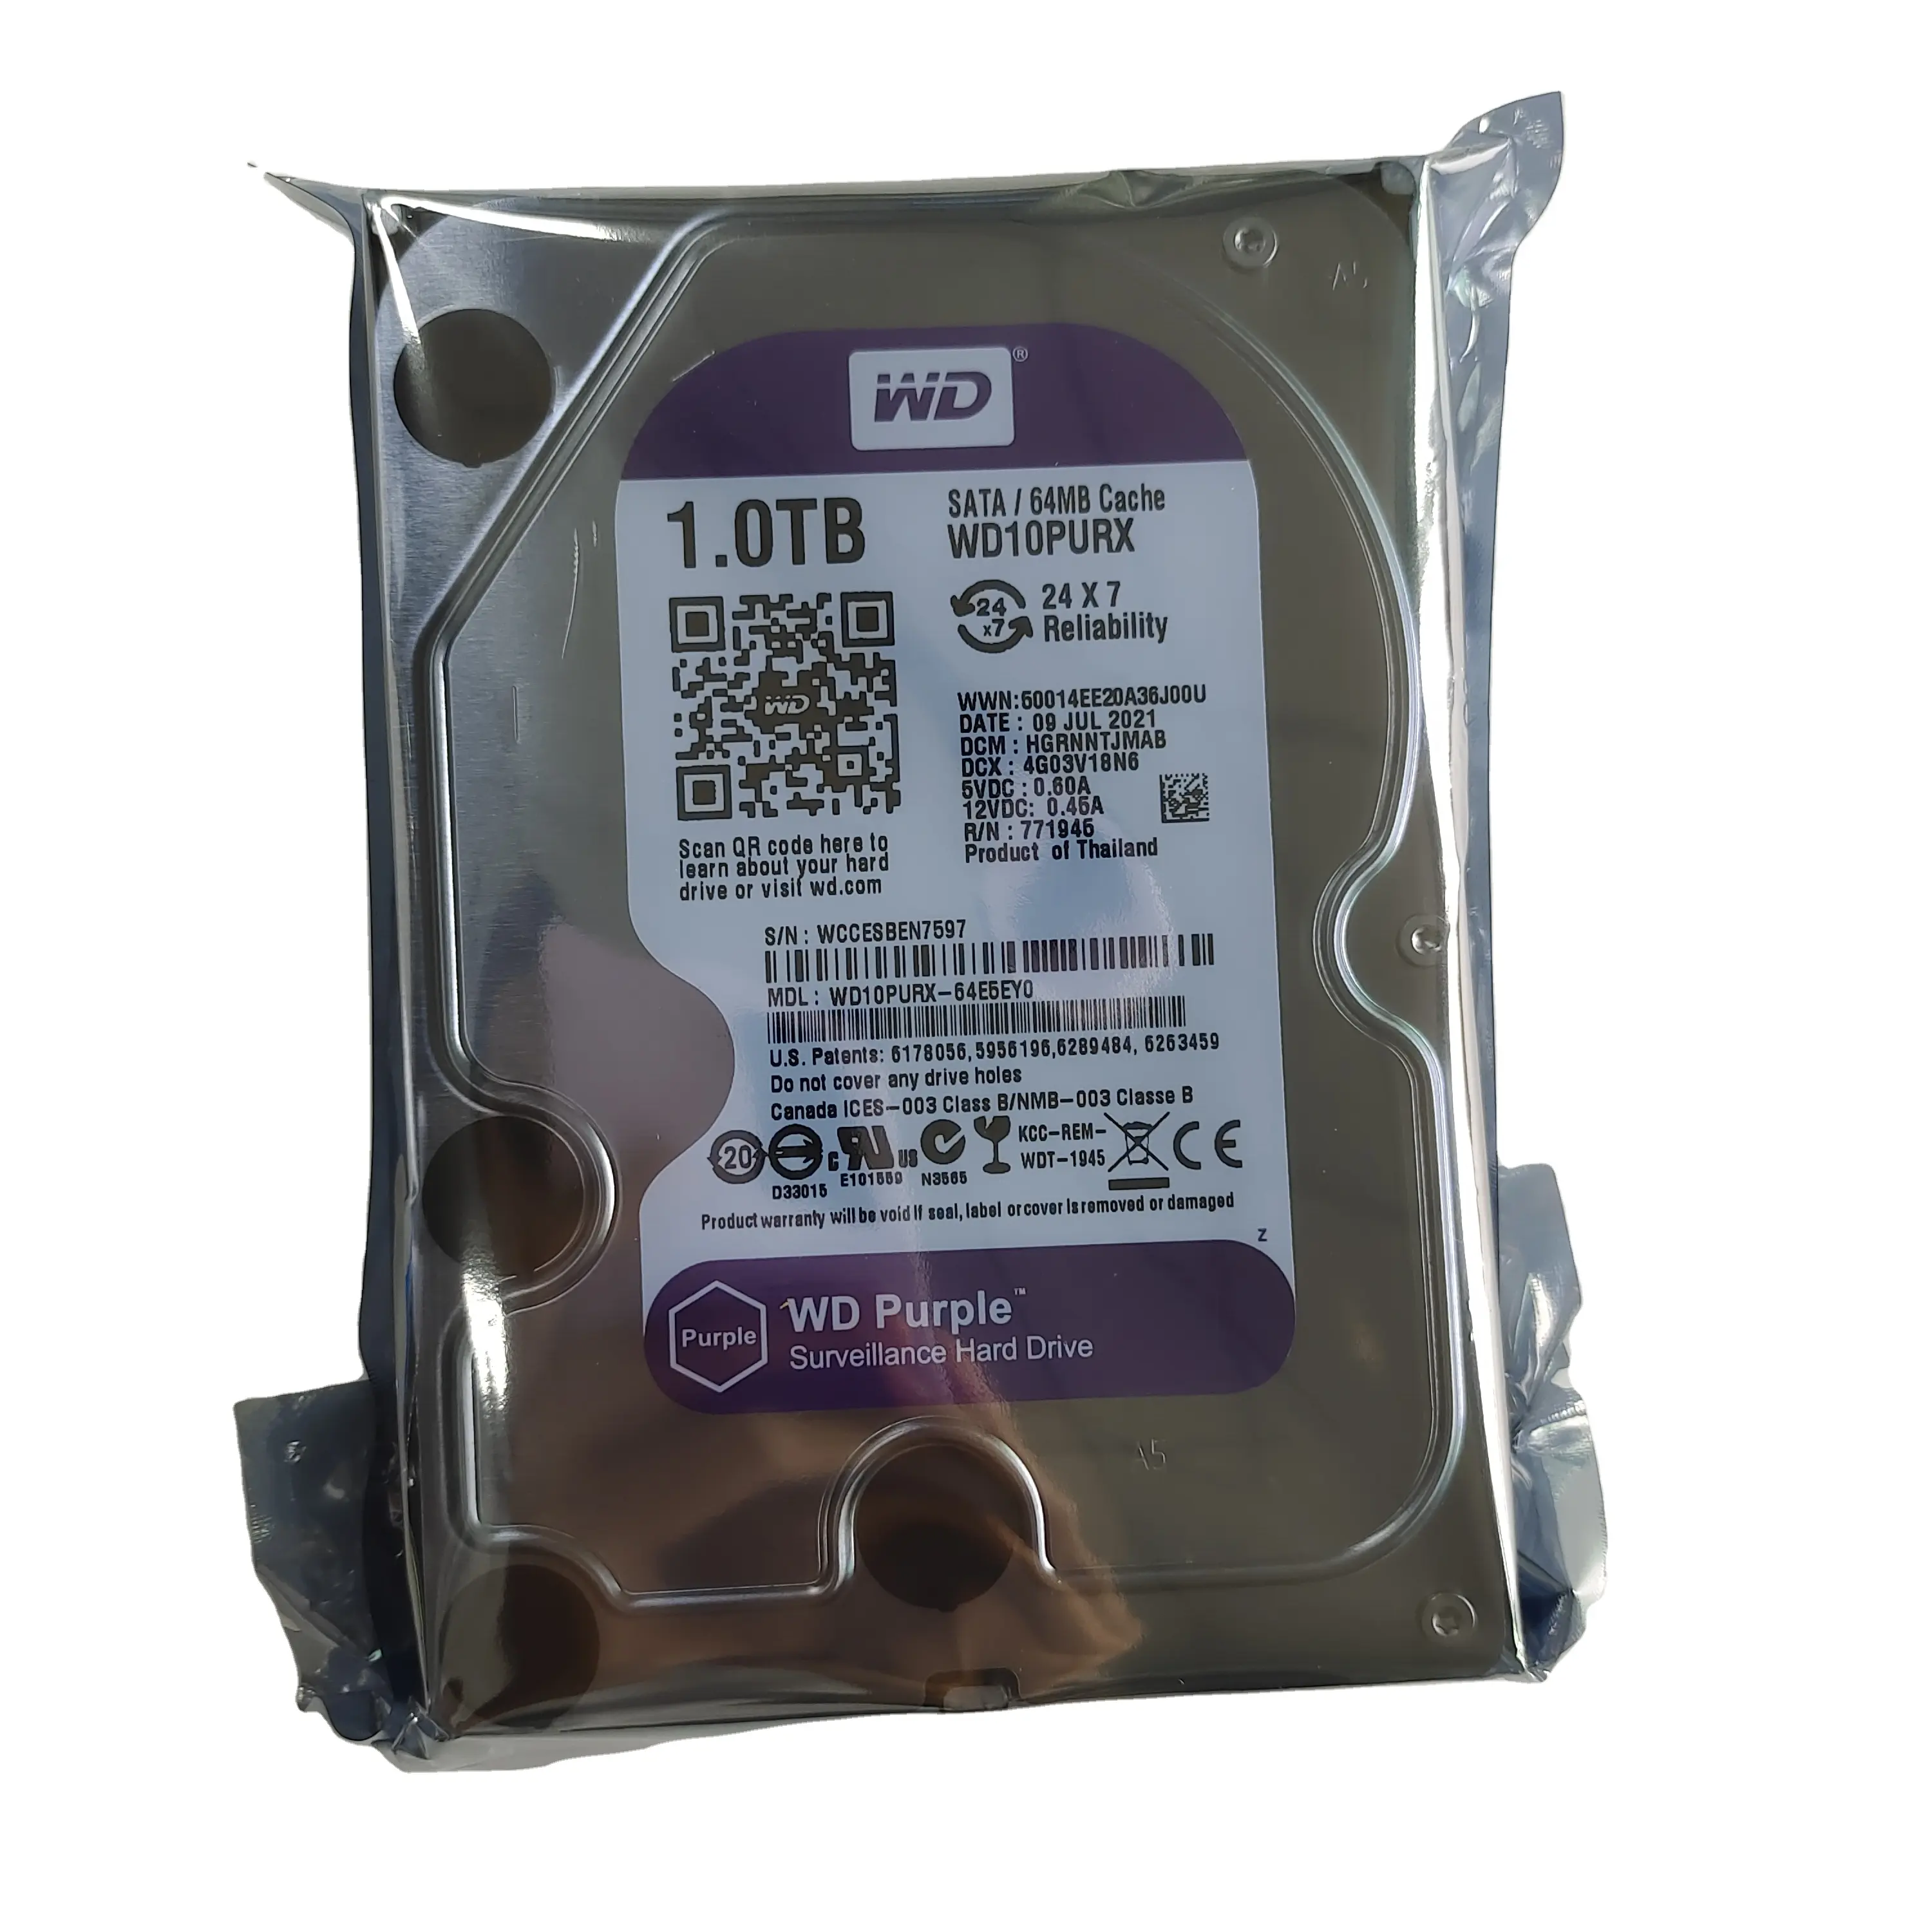 하드 디스크 드라이브 보라색 Hdd 디스코 Rigido Festplatte 보안 시스템 Dvr Nvr Wd10purx 테라바이트 3.5 인치 Sata 5400 Rpm 1 테라바이트 하드 드라이브